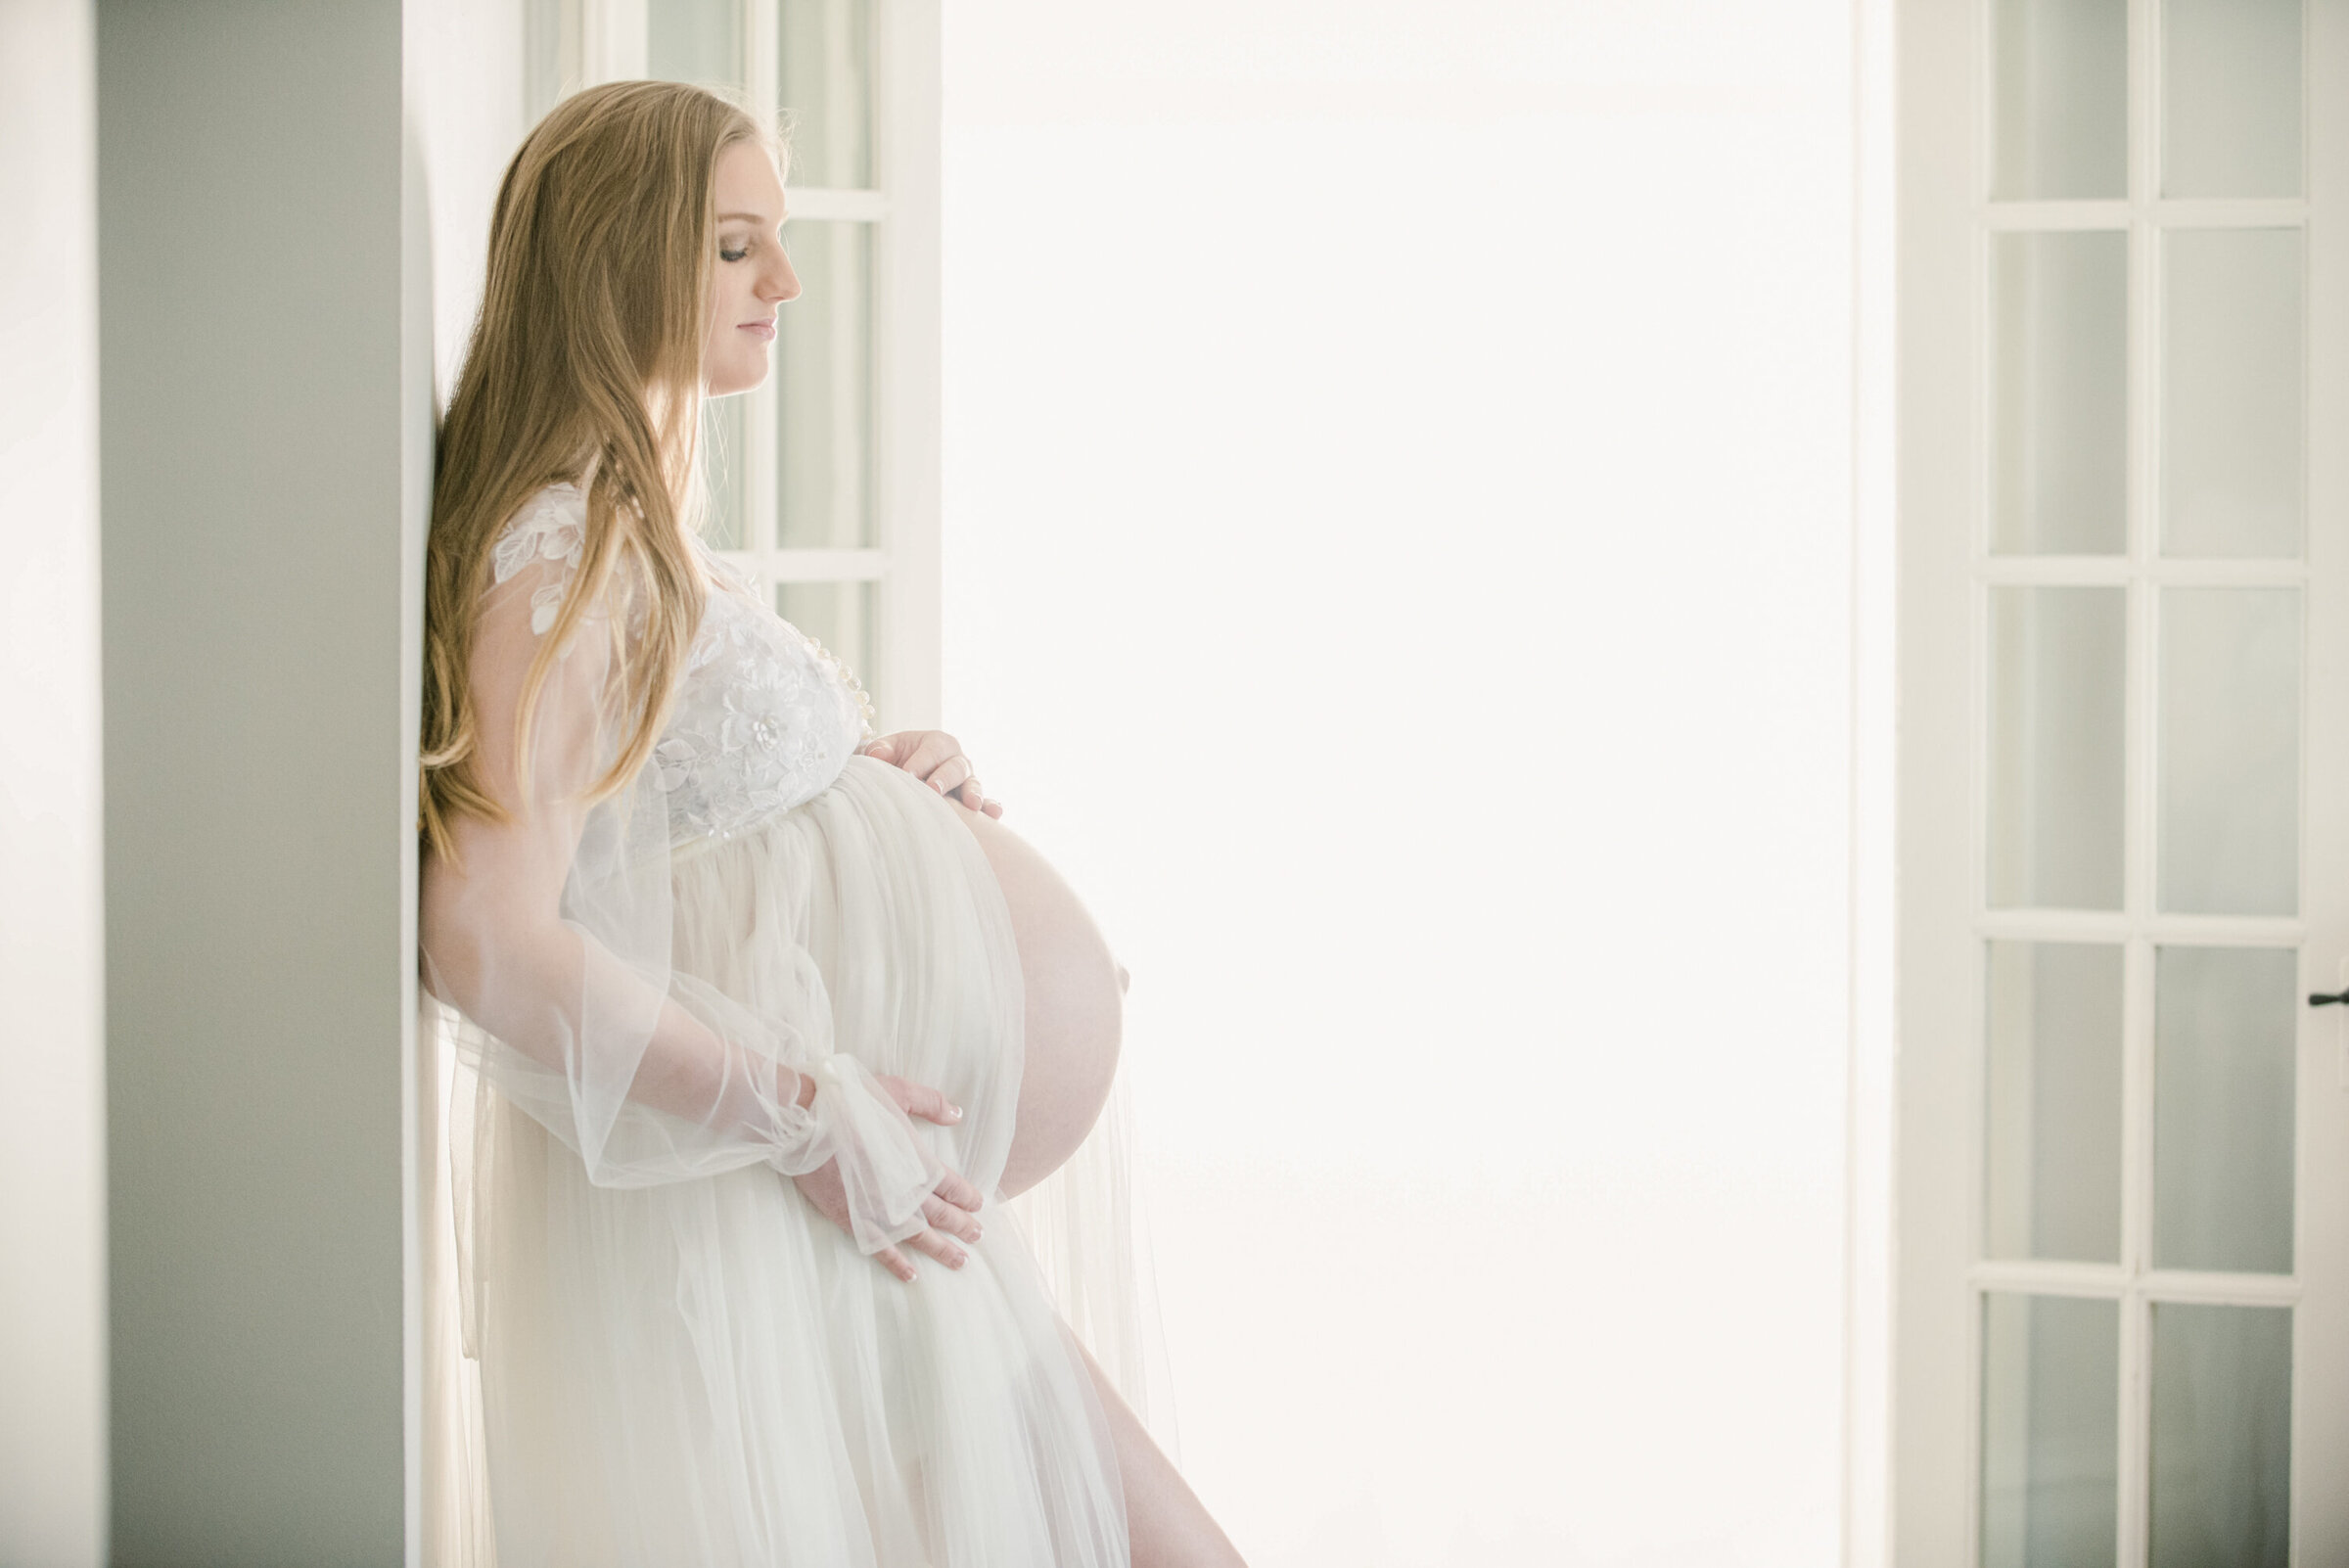 Studio Portraits of Pregnancy